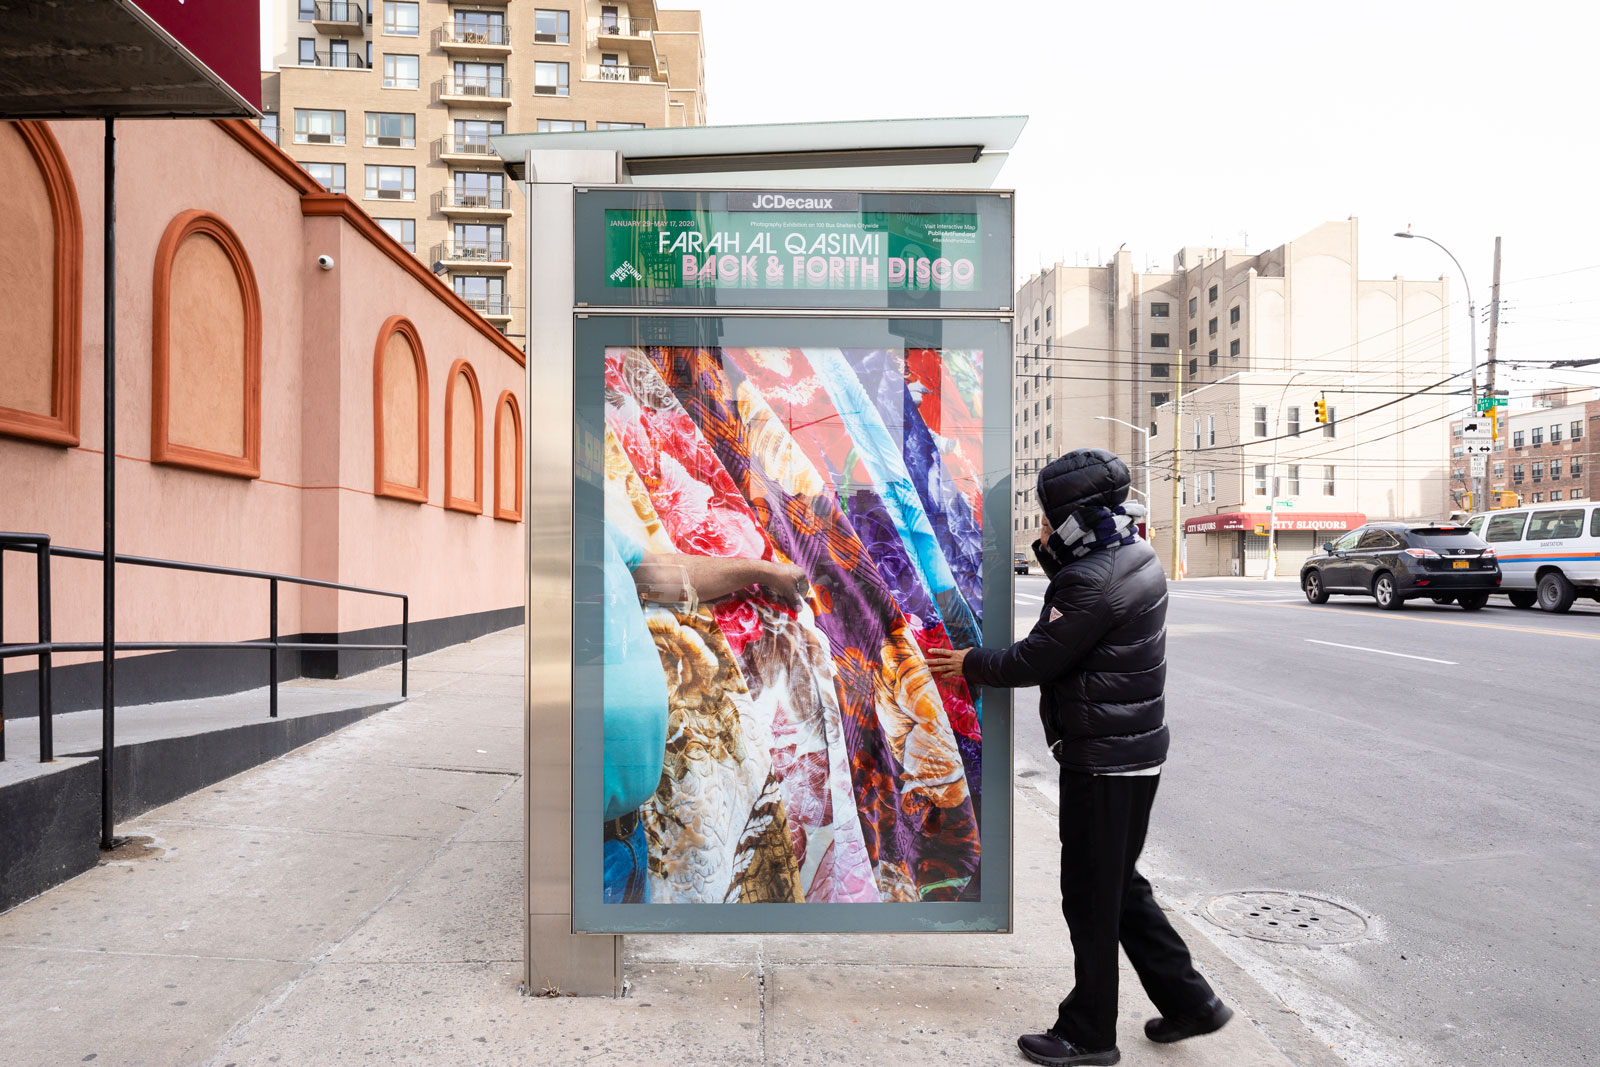 Farah Al Qasimi: Blanket Shop, 2019; 21st St between Astoria Blvd and 27th Rd, Queens